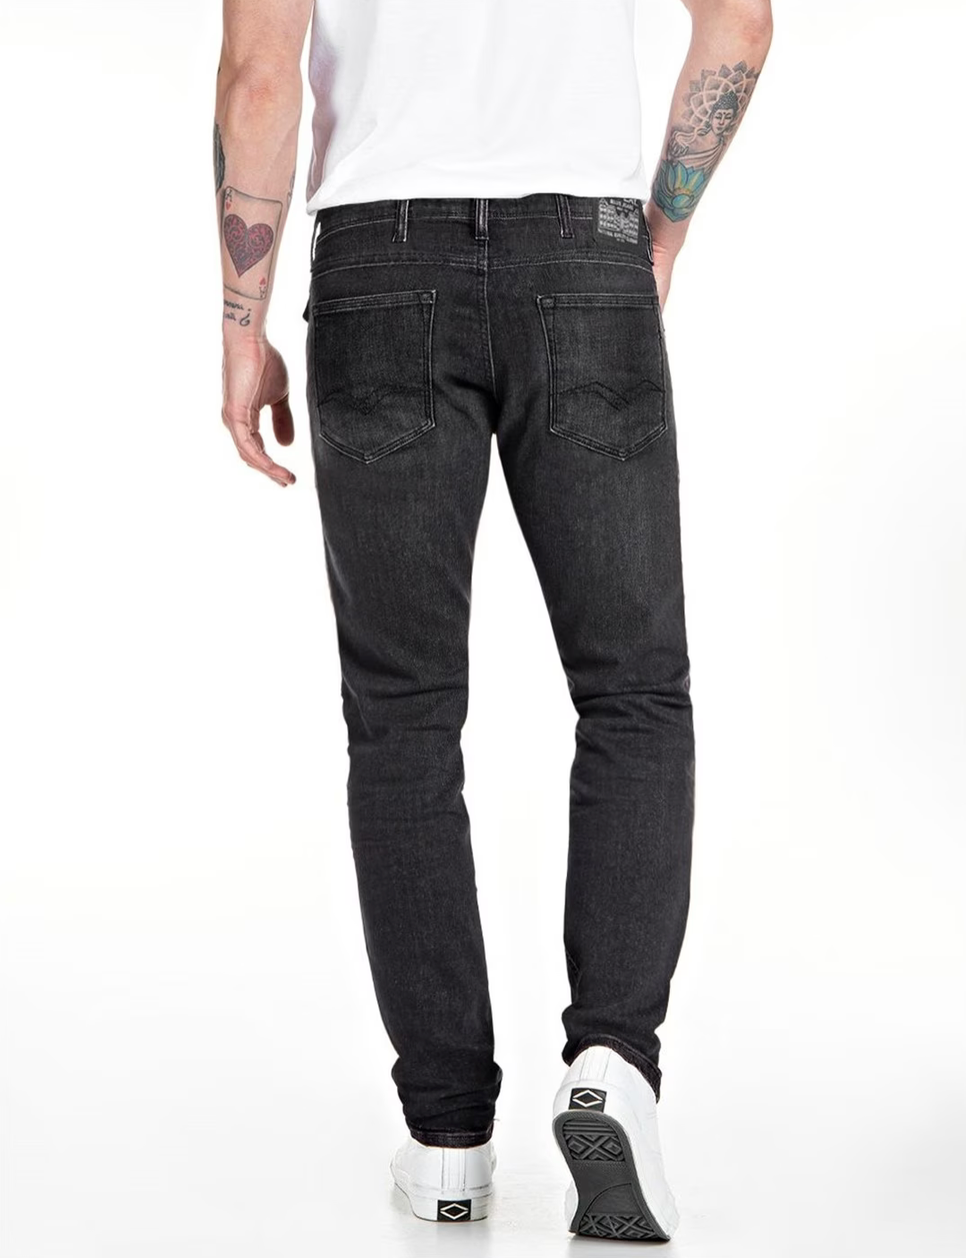 Replay Skinny Fit Jondrill Jeans - Dark Grey